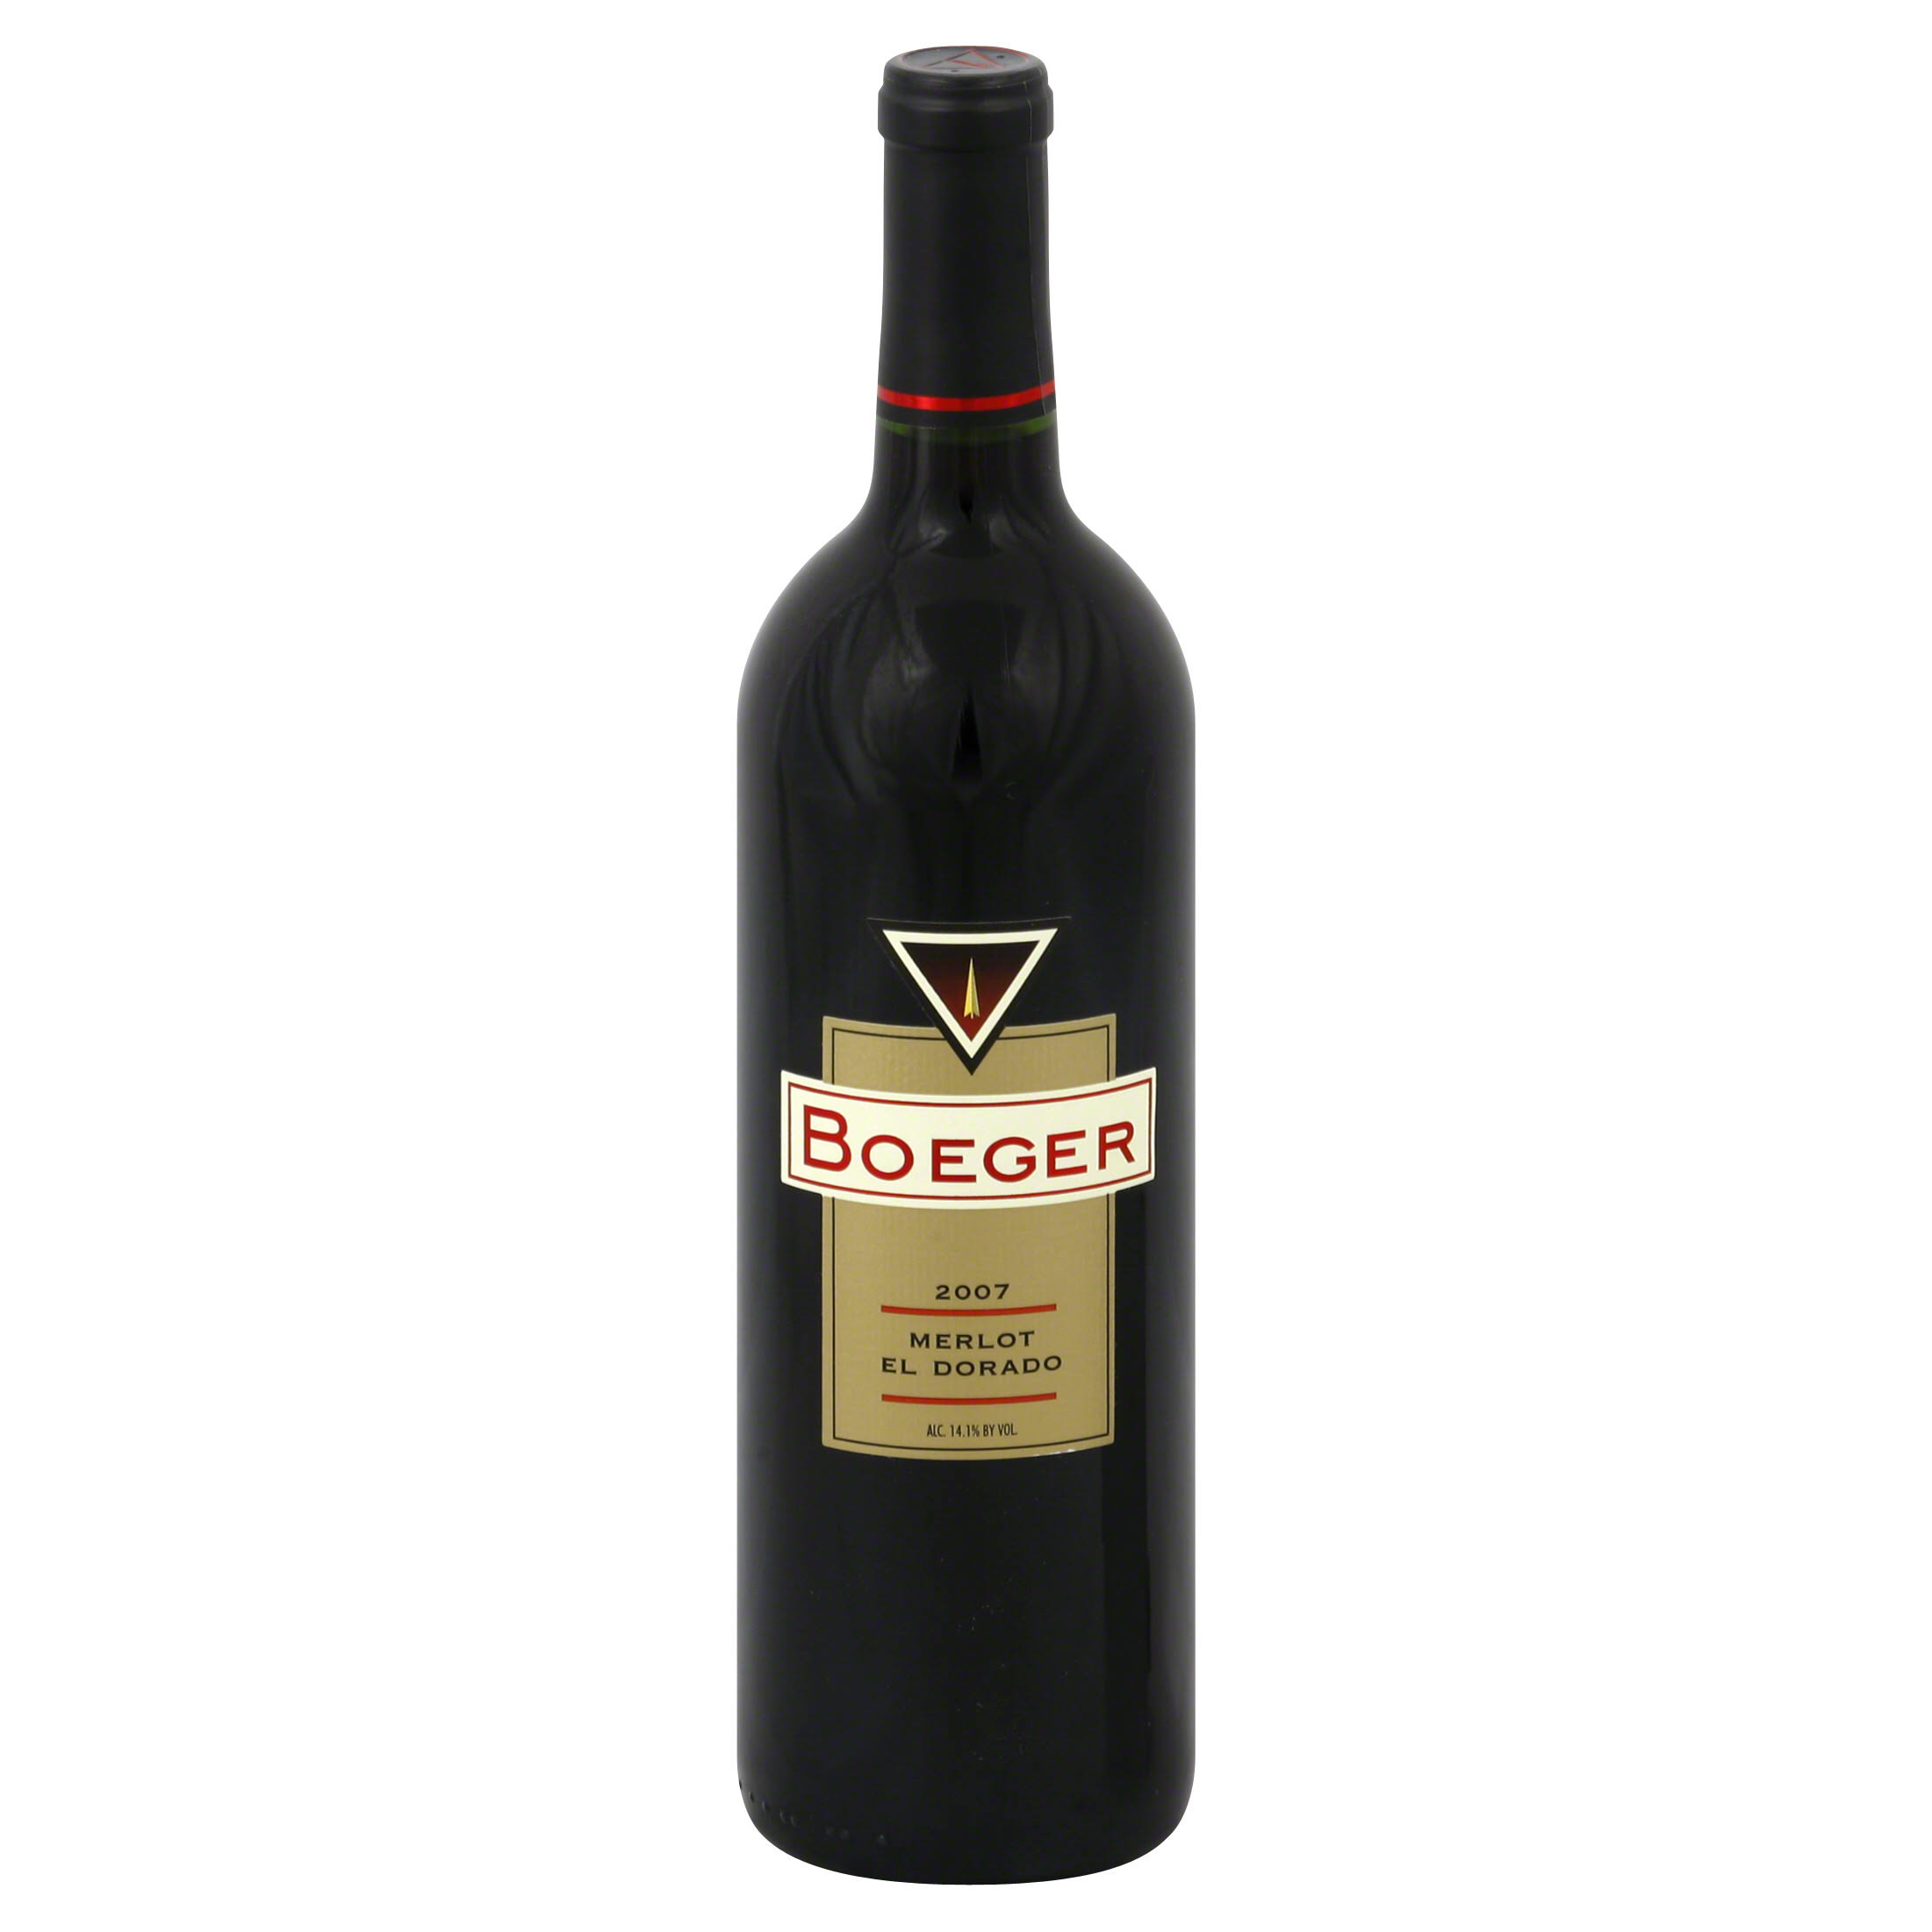 Boeger Merlot, El Dorado, 2007 - 750 ml